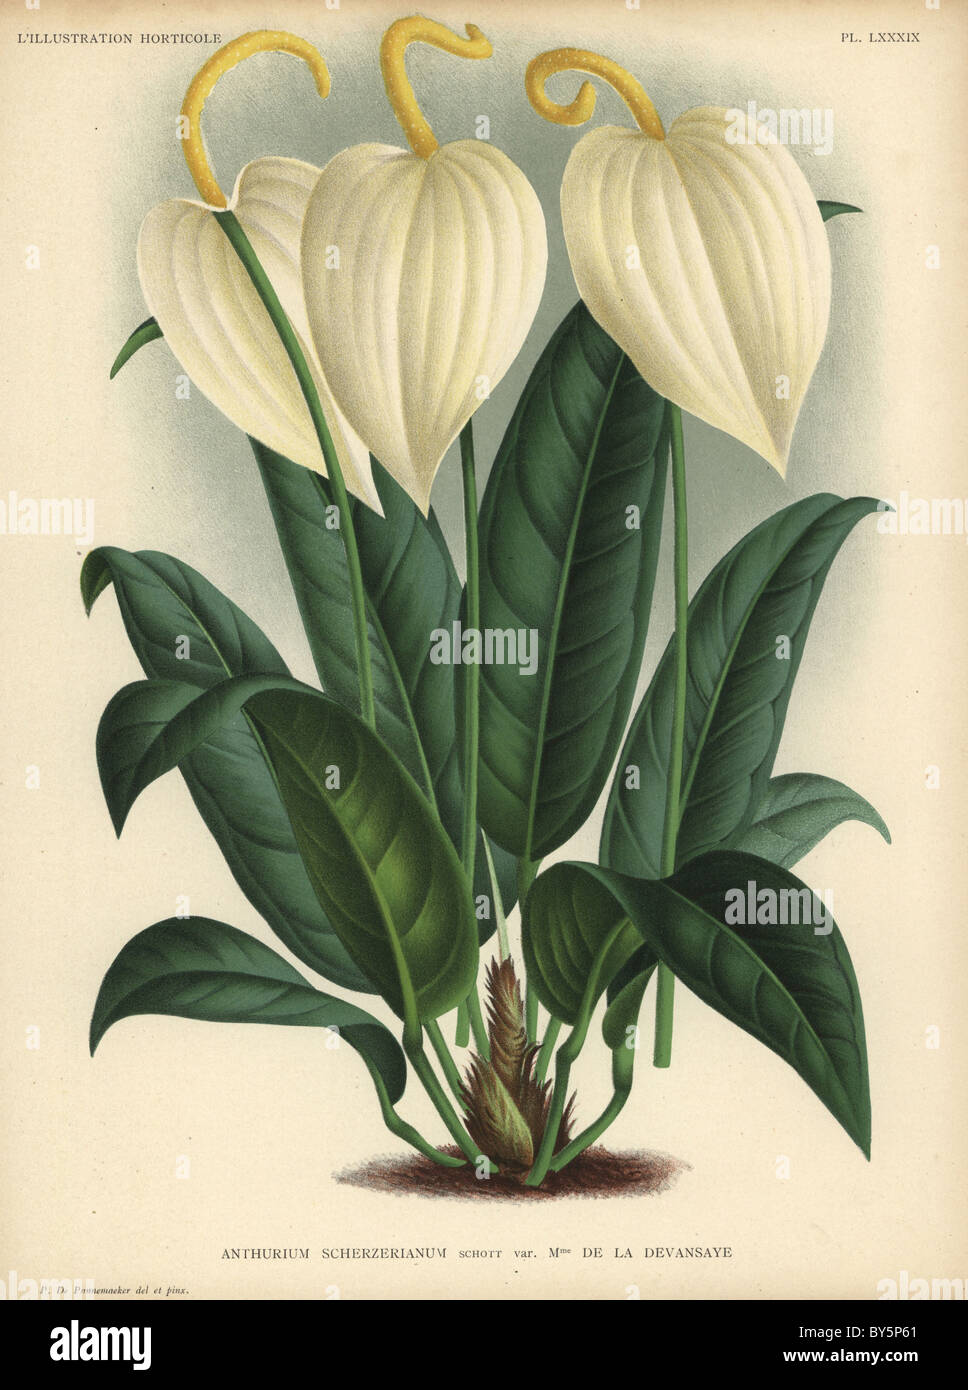 Anthurium scherzerianum or flamingo flower with cream-colored flowers. Variety Madame de la Devansaye. Stock Photo